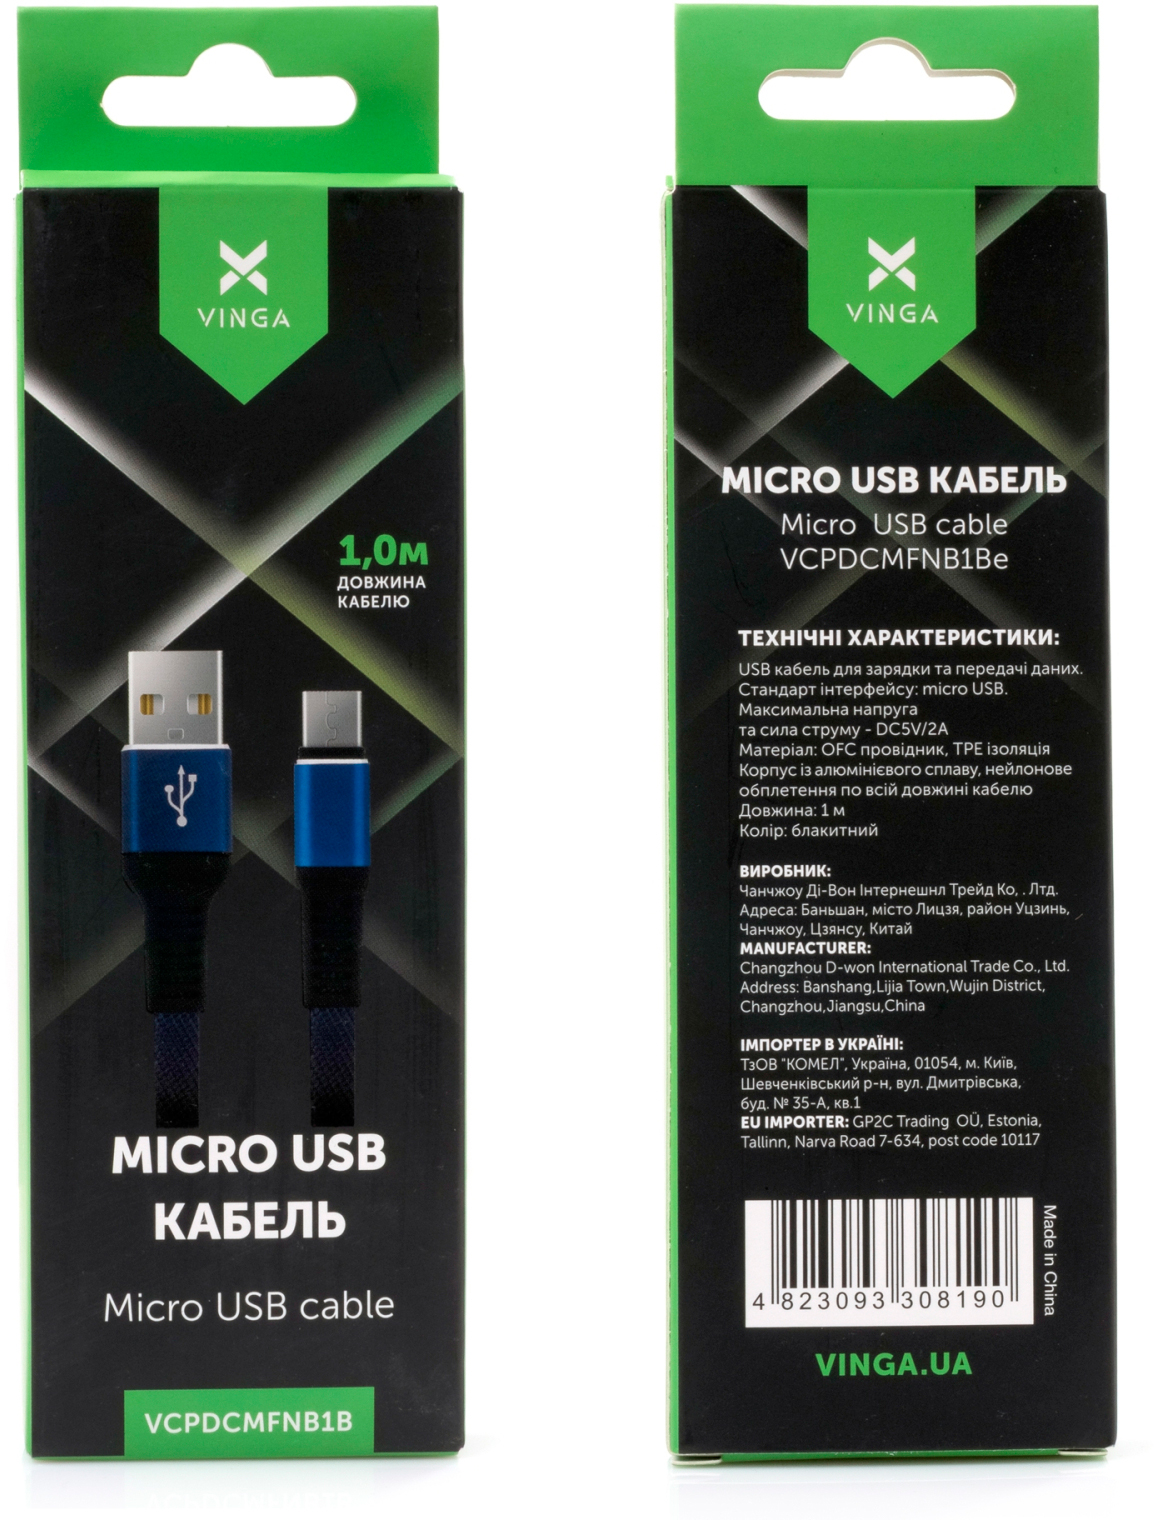 продаём Vinga USB 2.0 AM to Micro 5P 1m flat nylon blue (VCPDCMFNB1B) в Украине - фото 4